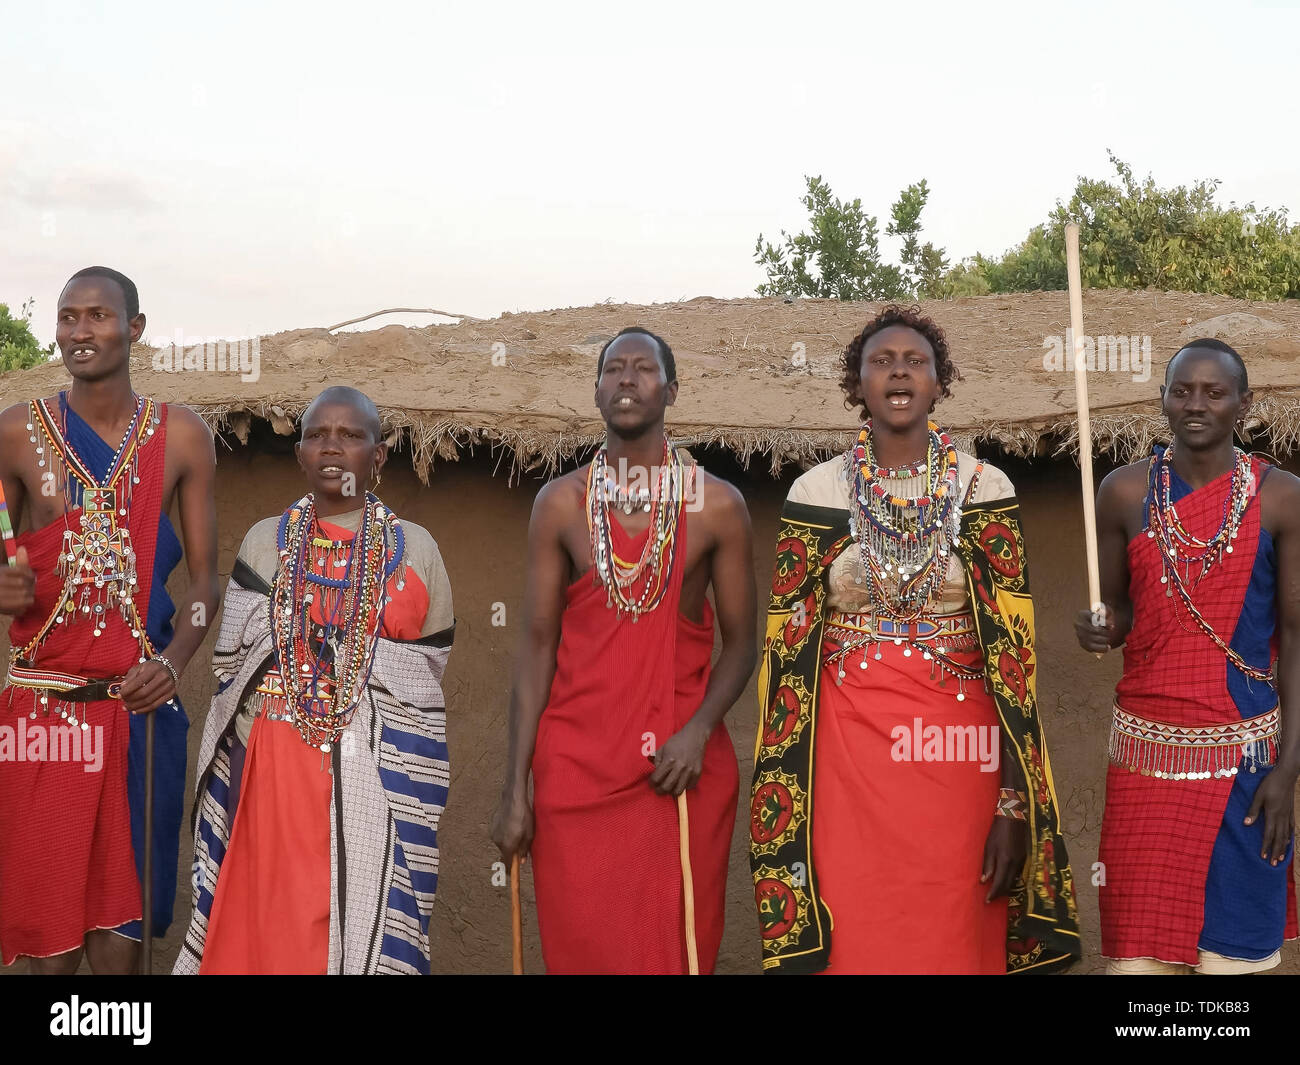 NAROK, KENYA, 28 août 2016 : un groupe d'hommes et femmes maasai chantant et dansant dans un village près de Masai Mara, Kenya Banque D'Images